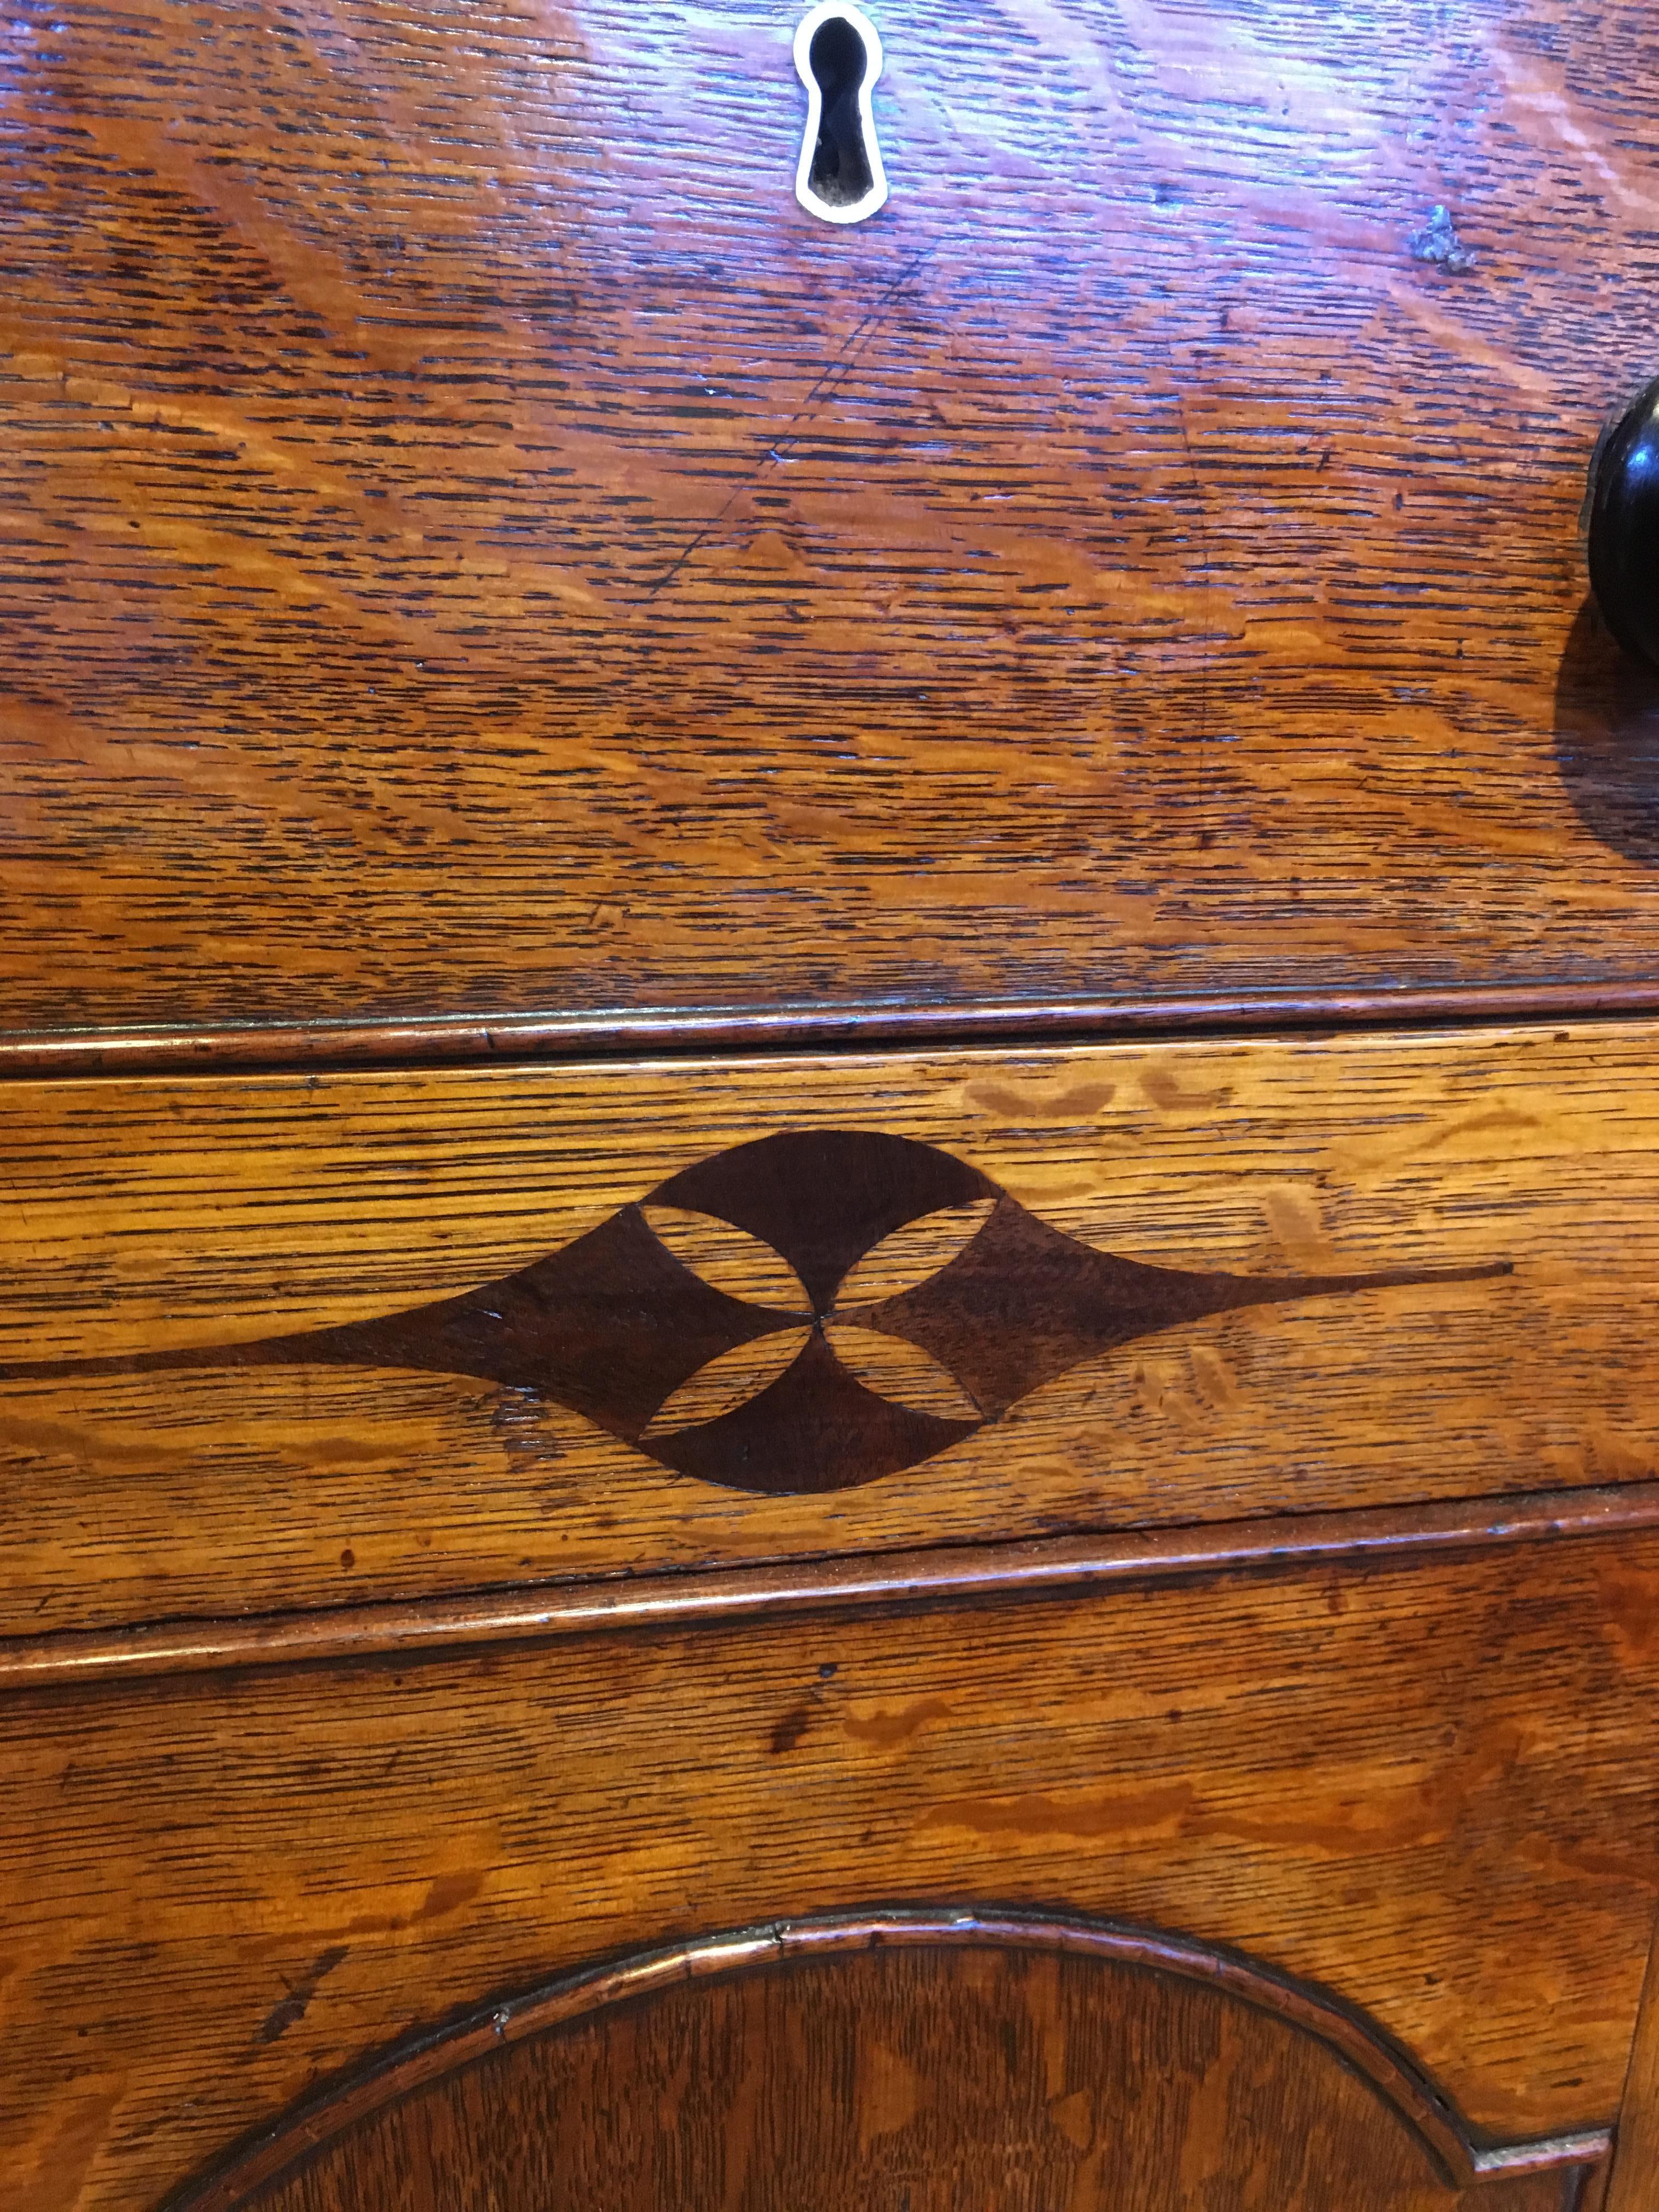 Early 19th Century Oak Dresser